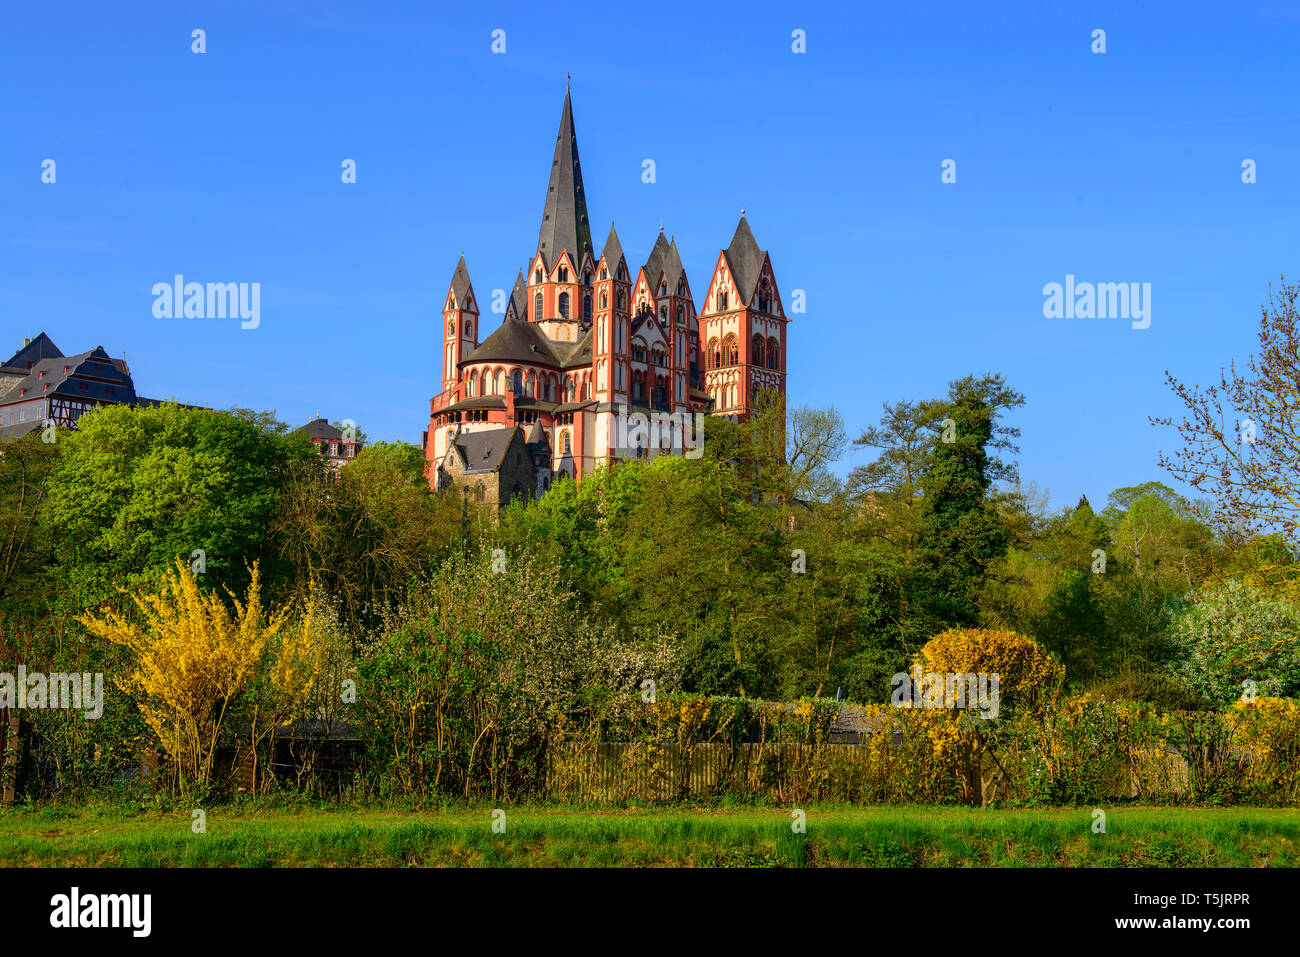 Germany, Hesse, Limburg, Limburg Cathedral Stock Photo